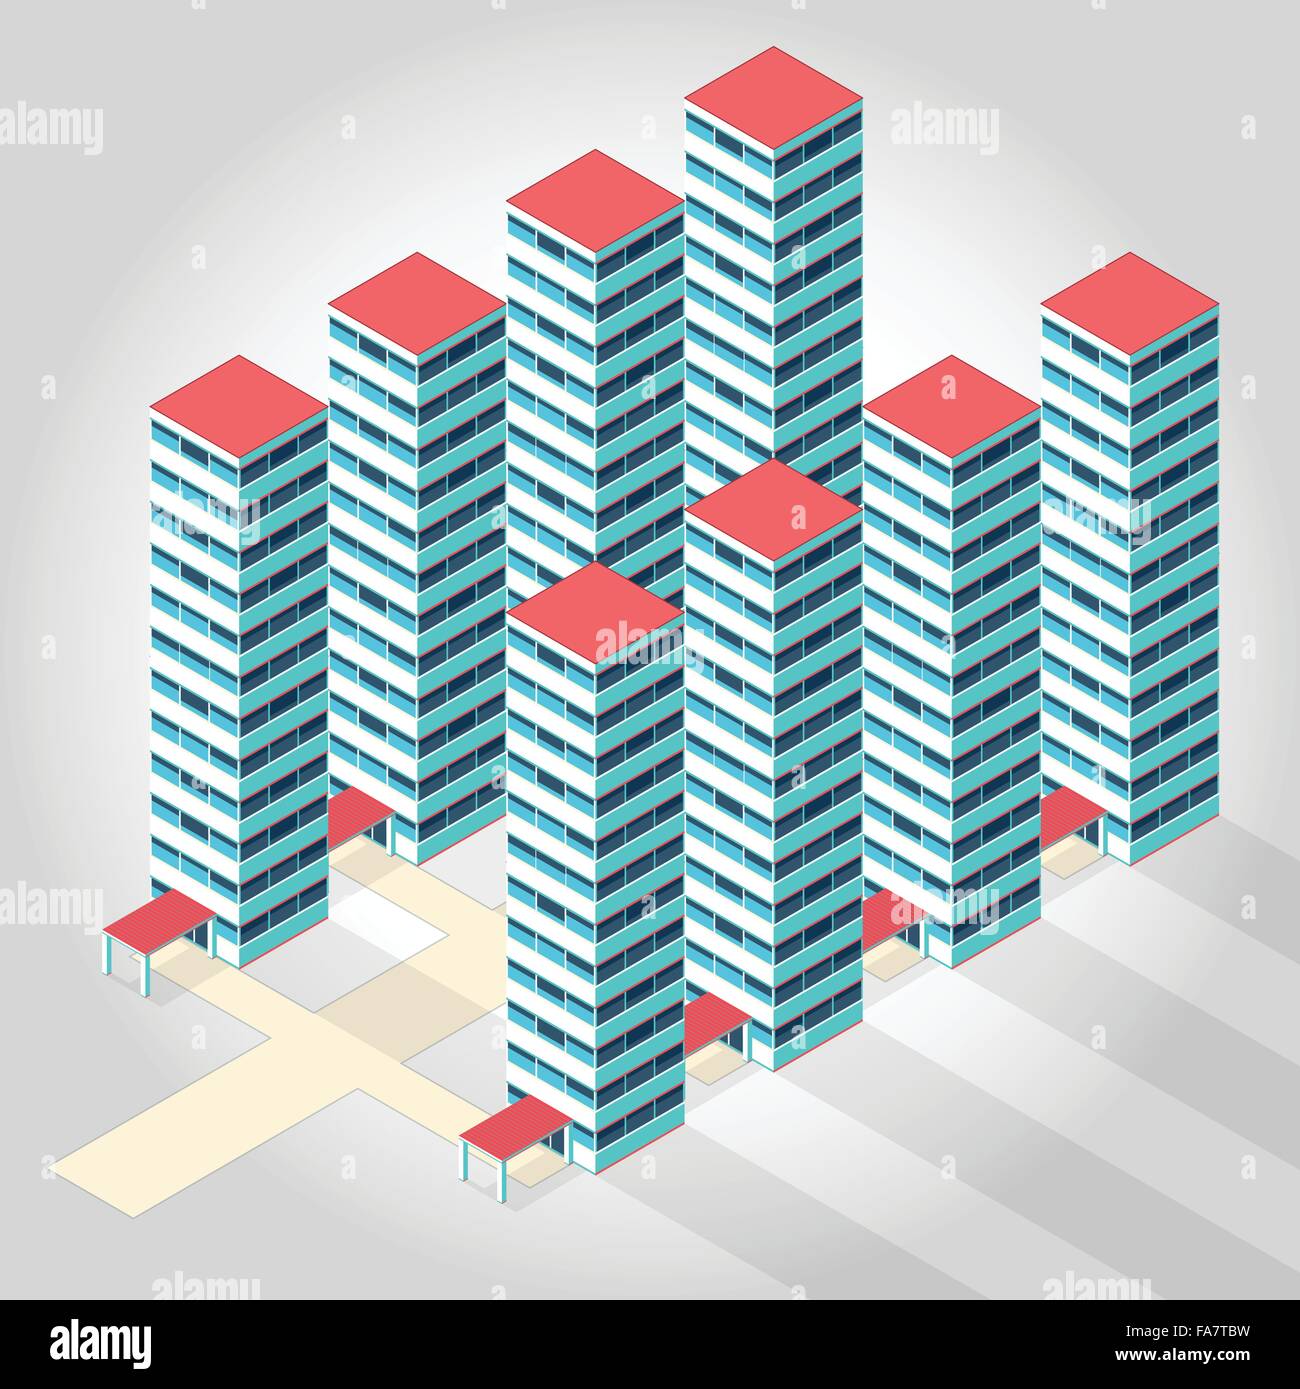 Schöne High-Rise Wohnung isometrische bauen Illustration für wissenschaftliche Artikel Wohnsiedlung isolierte Abbildung Vektor Stock Vektor